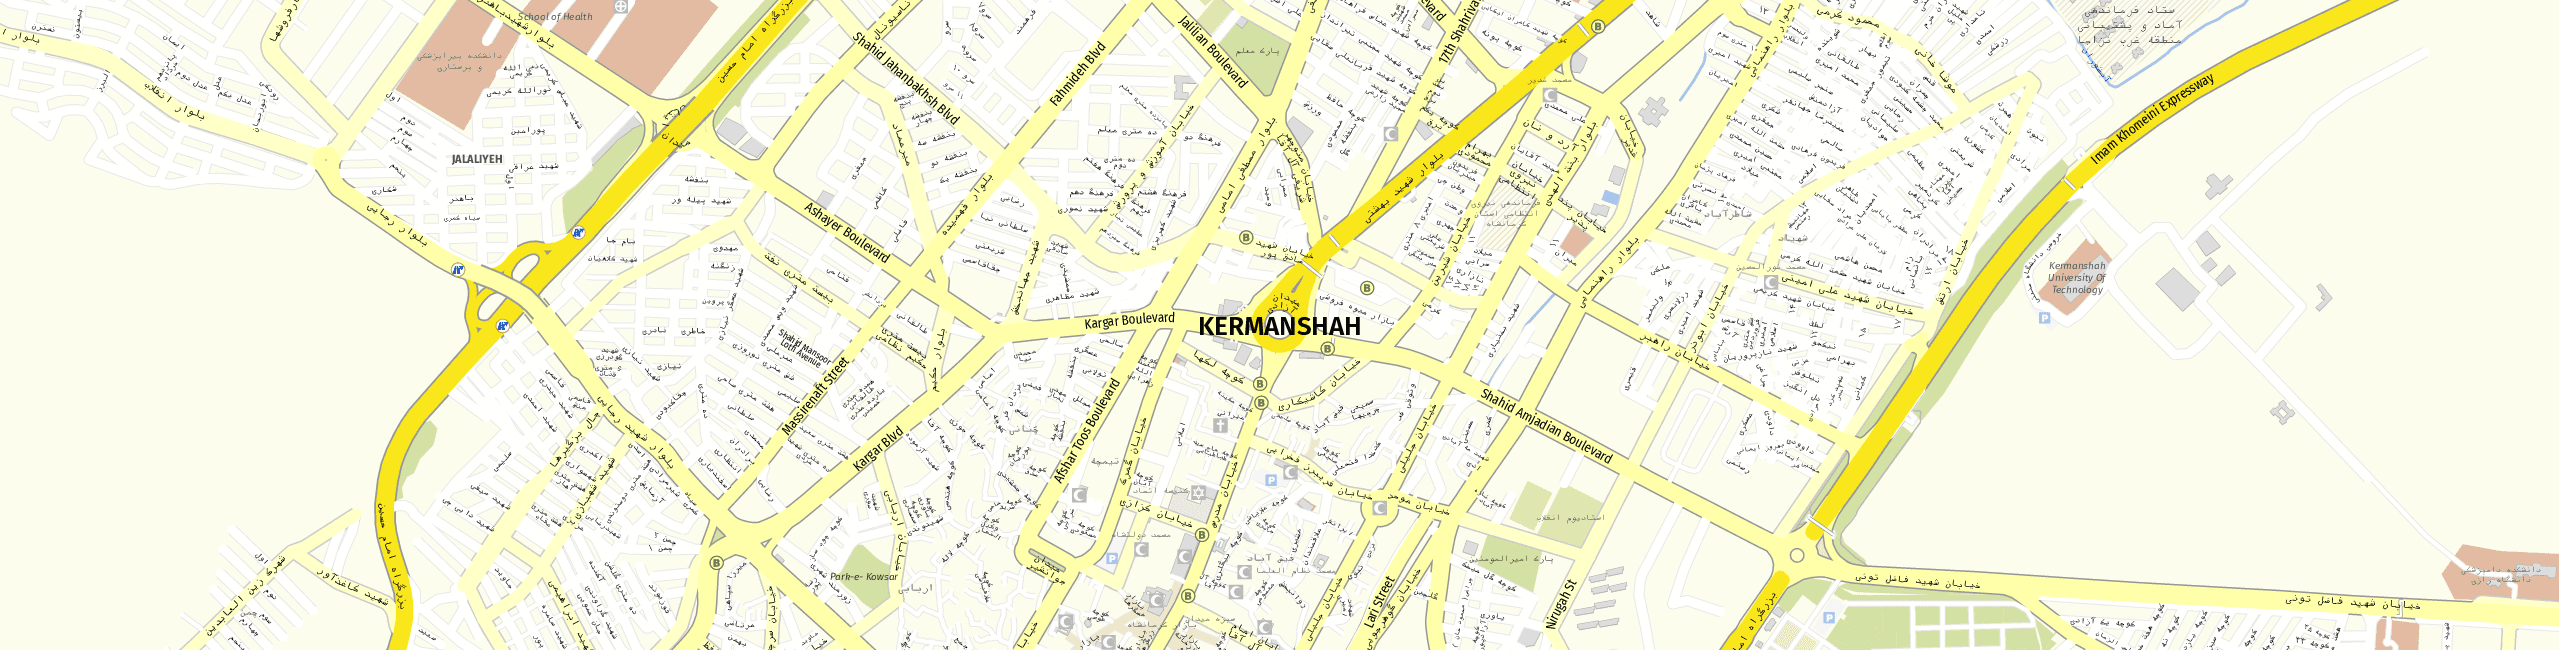 Stadtplan Kermanschah zum Downloaden.